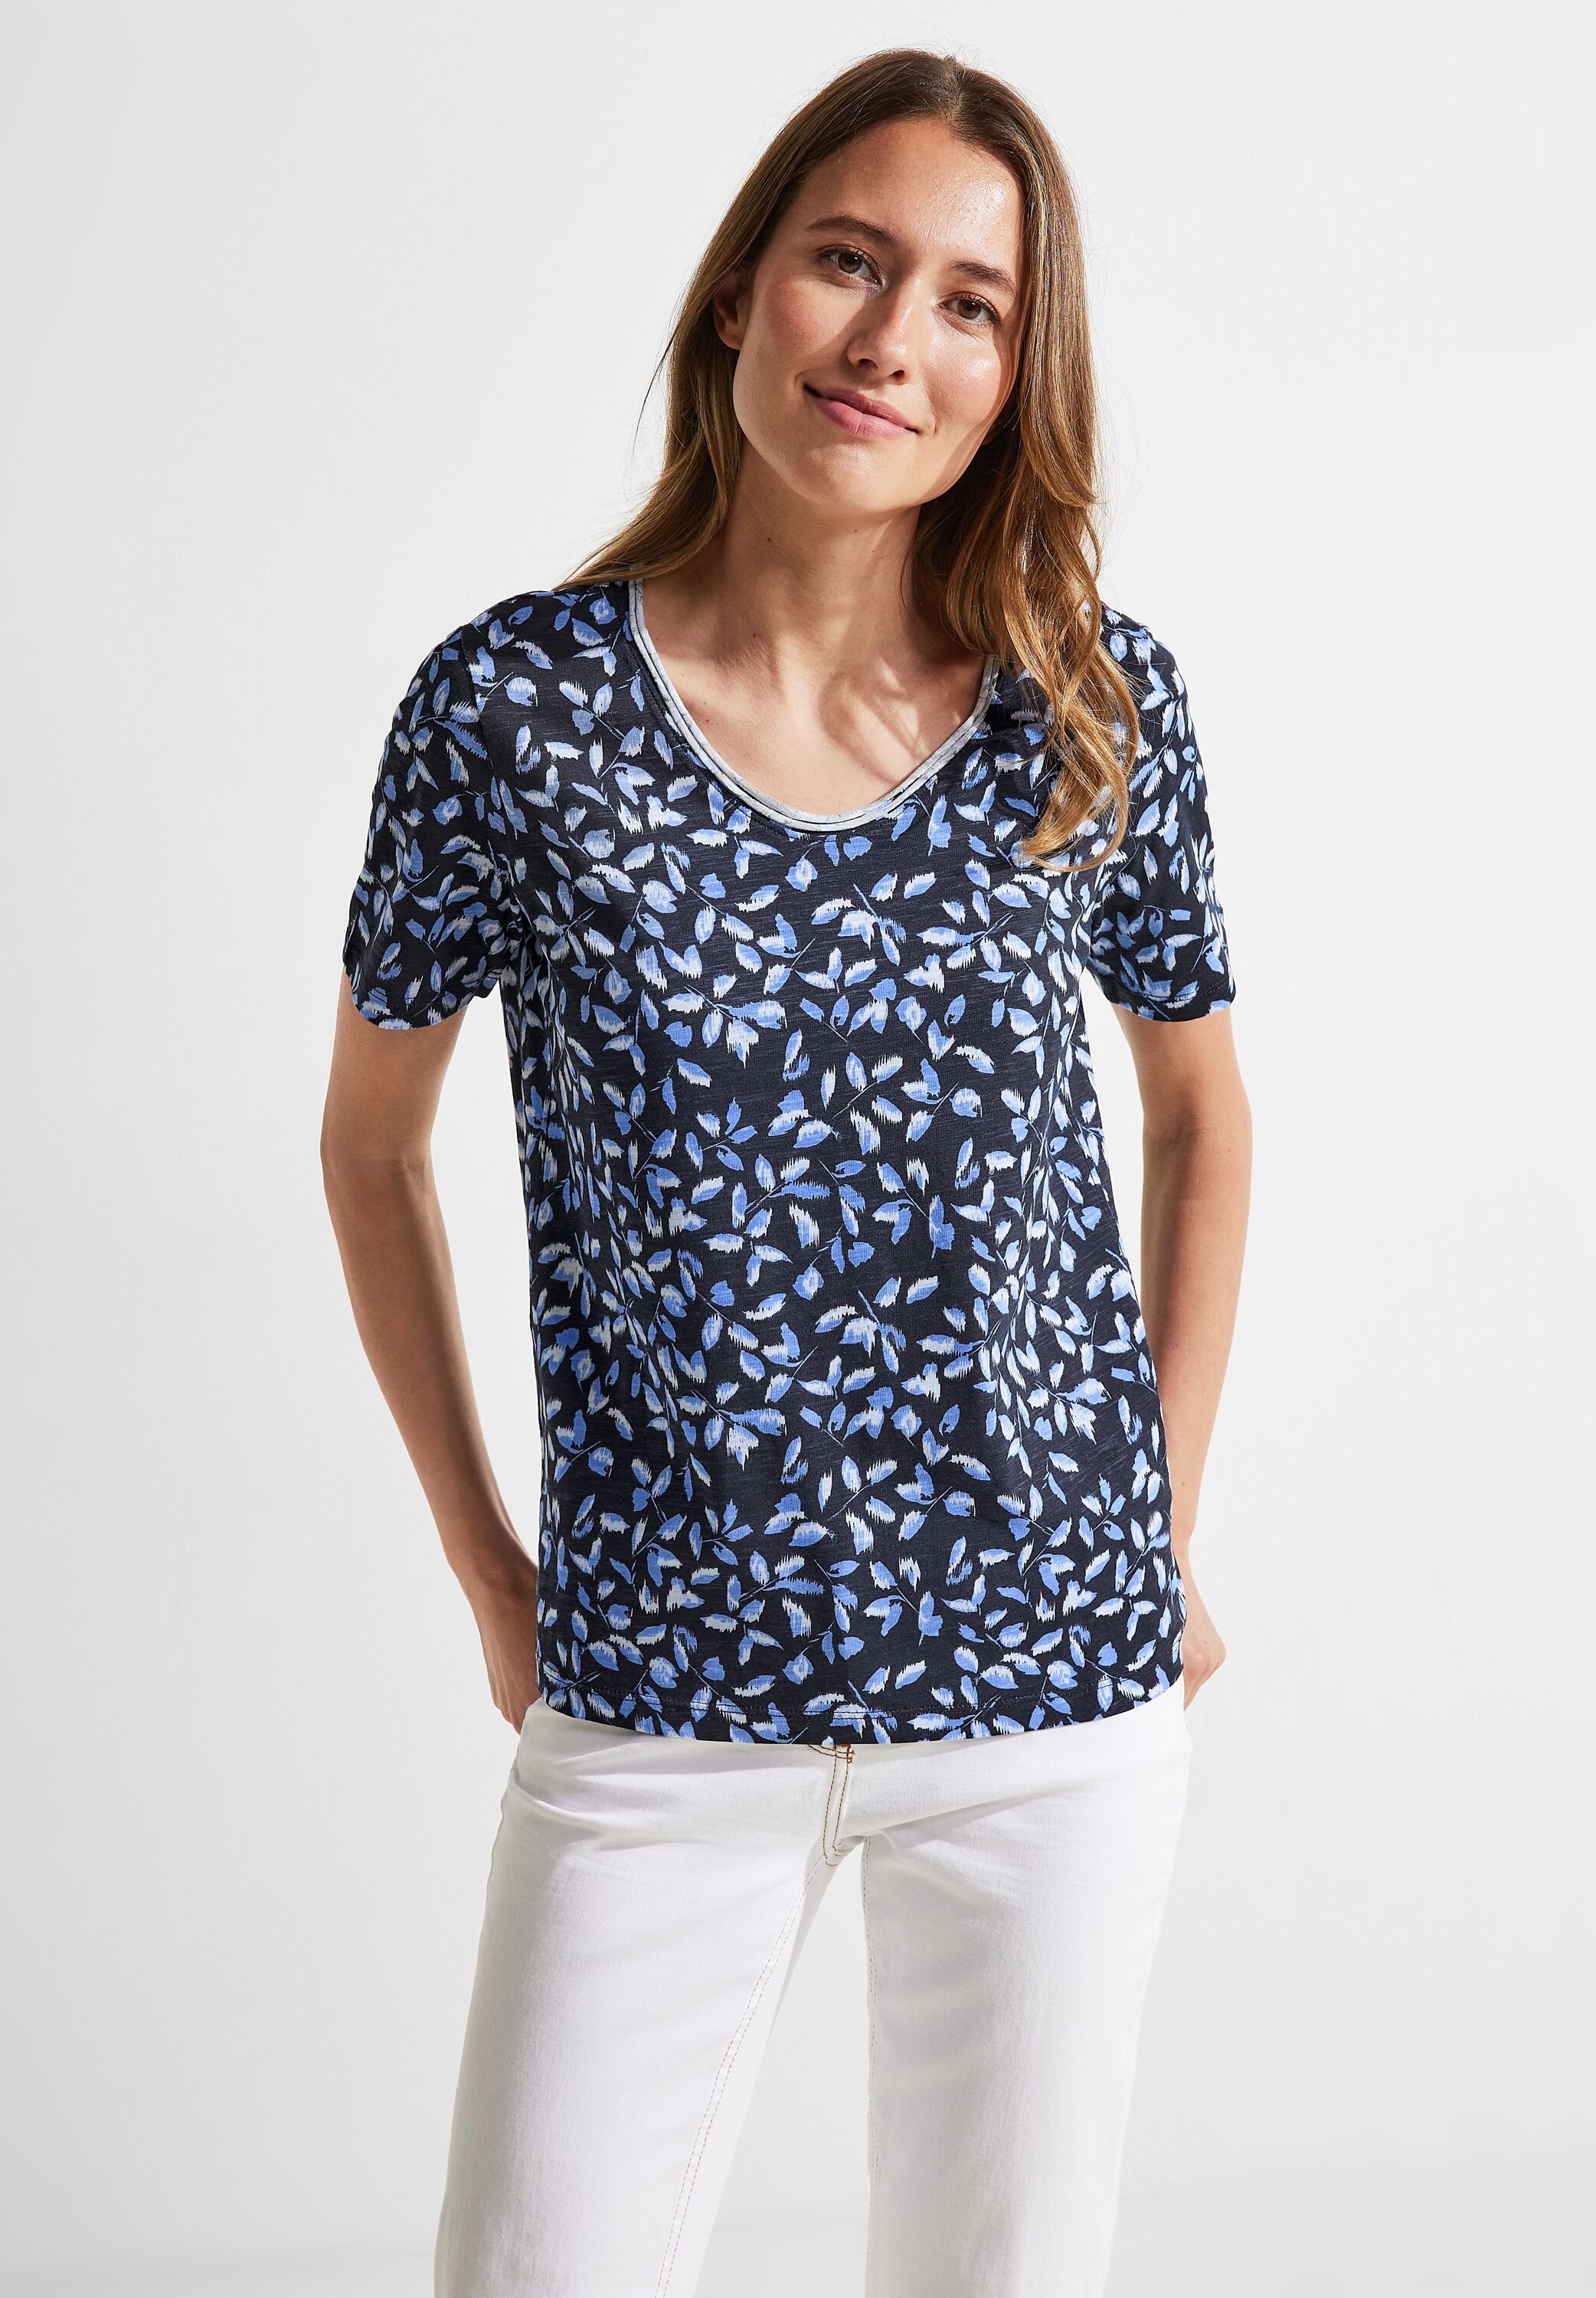 Blumenshirts für Damen online kaufen » Geblümte Shirts | OTTO